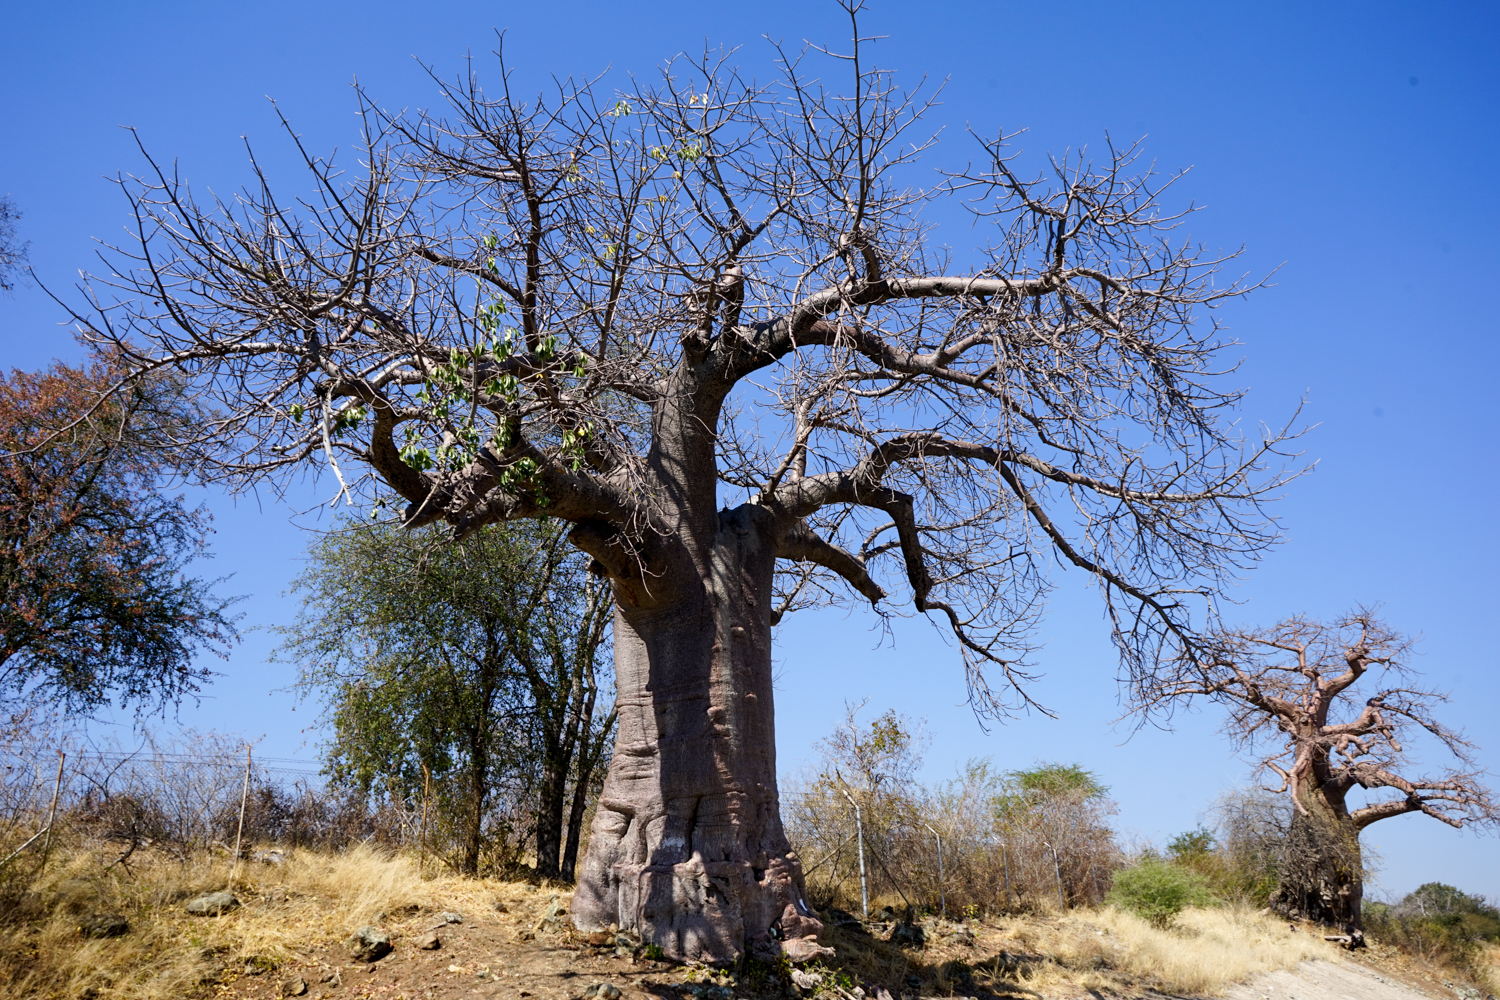 バオバブの木